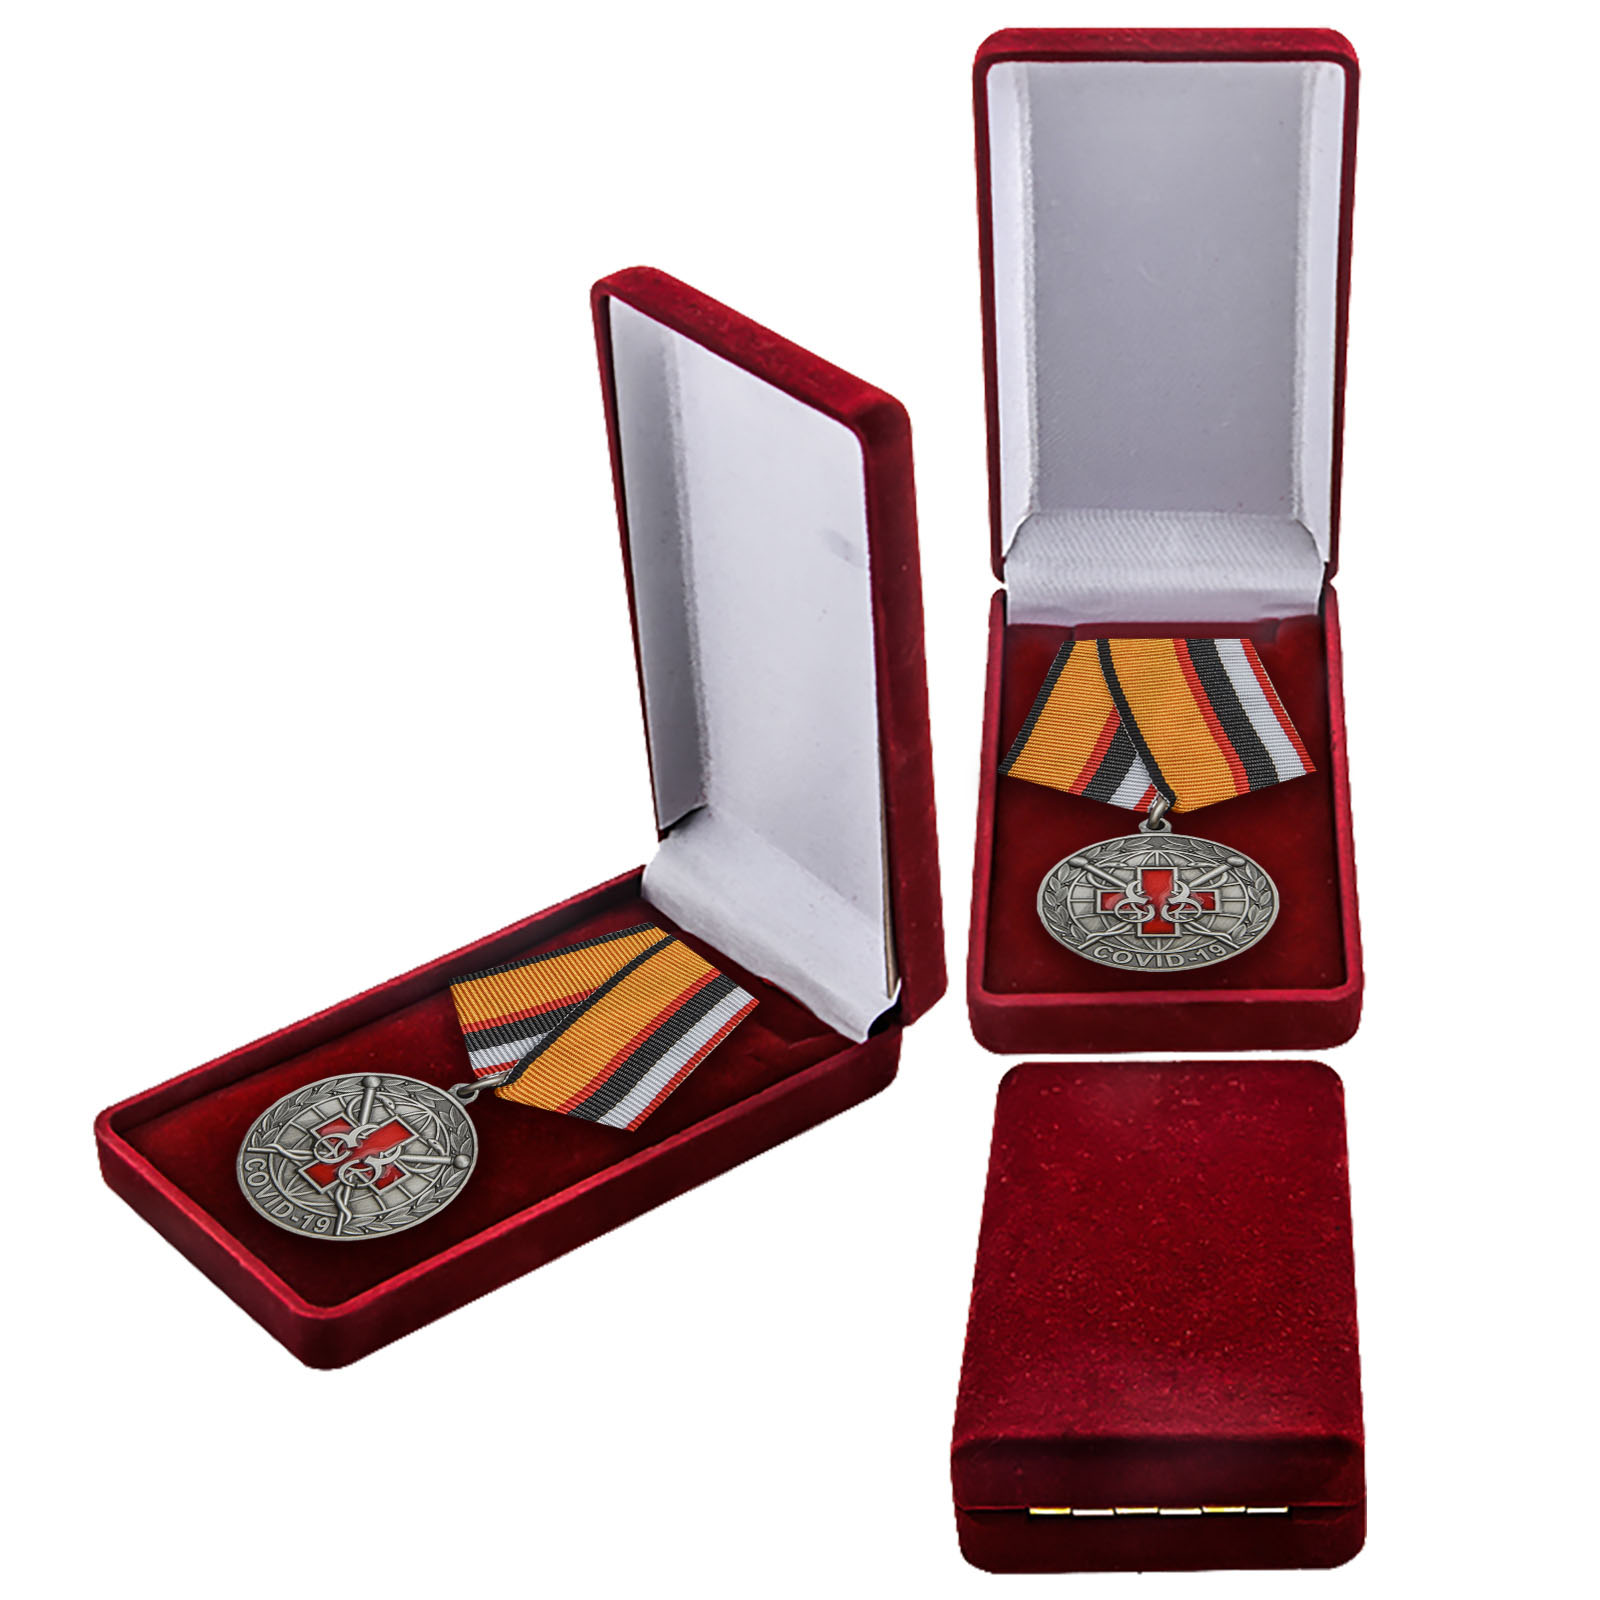 Памятная медаль "За борьбу с пандемией COVID-19" 